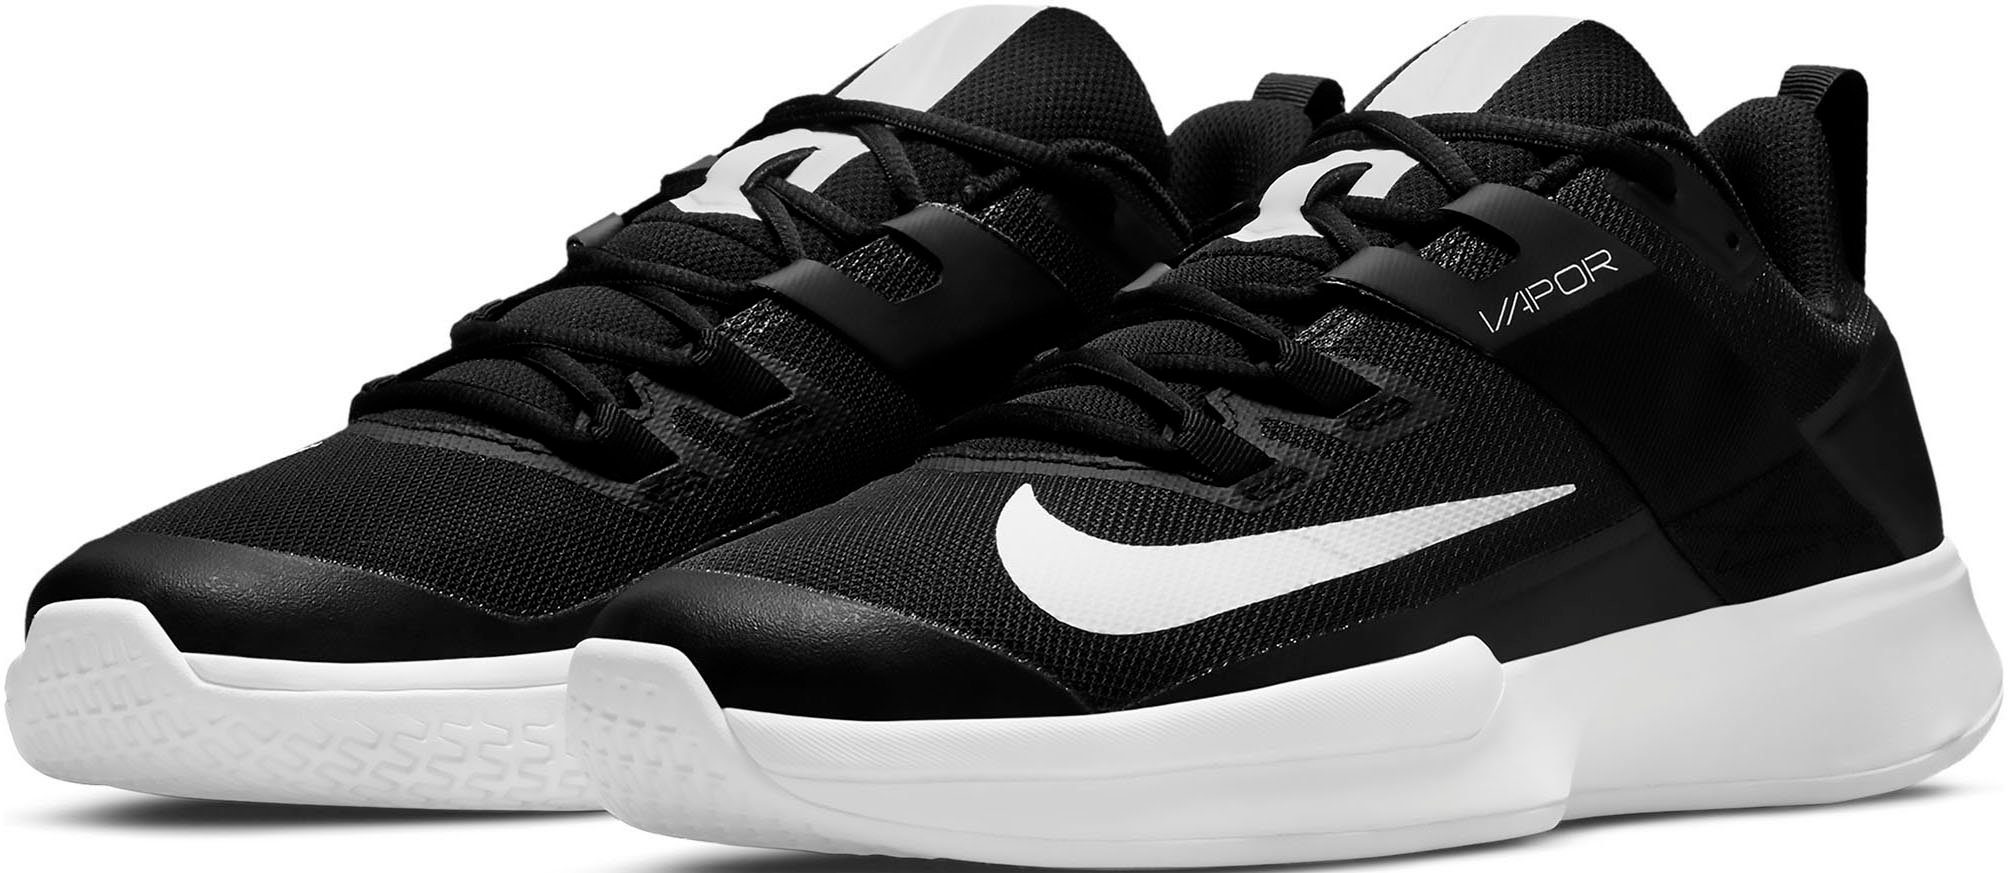 Nike »NikeCourt Vapor Lite« Tennisschuh, Härterer Schaumstoff an der  Außenseite des Fußes ermöglicht schnelle Bewegungen, damit du so schnell  wie möglich zum Ball kommst online kaufen | OTTO